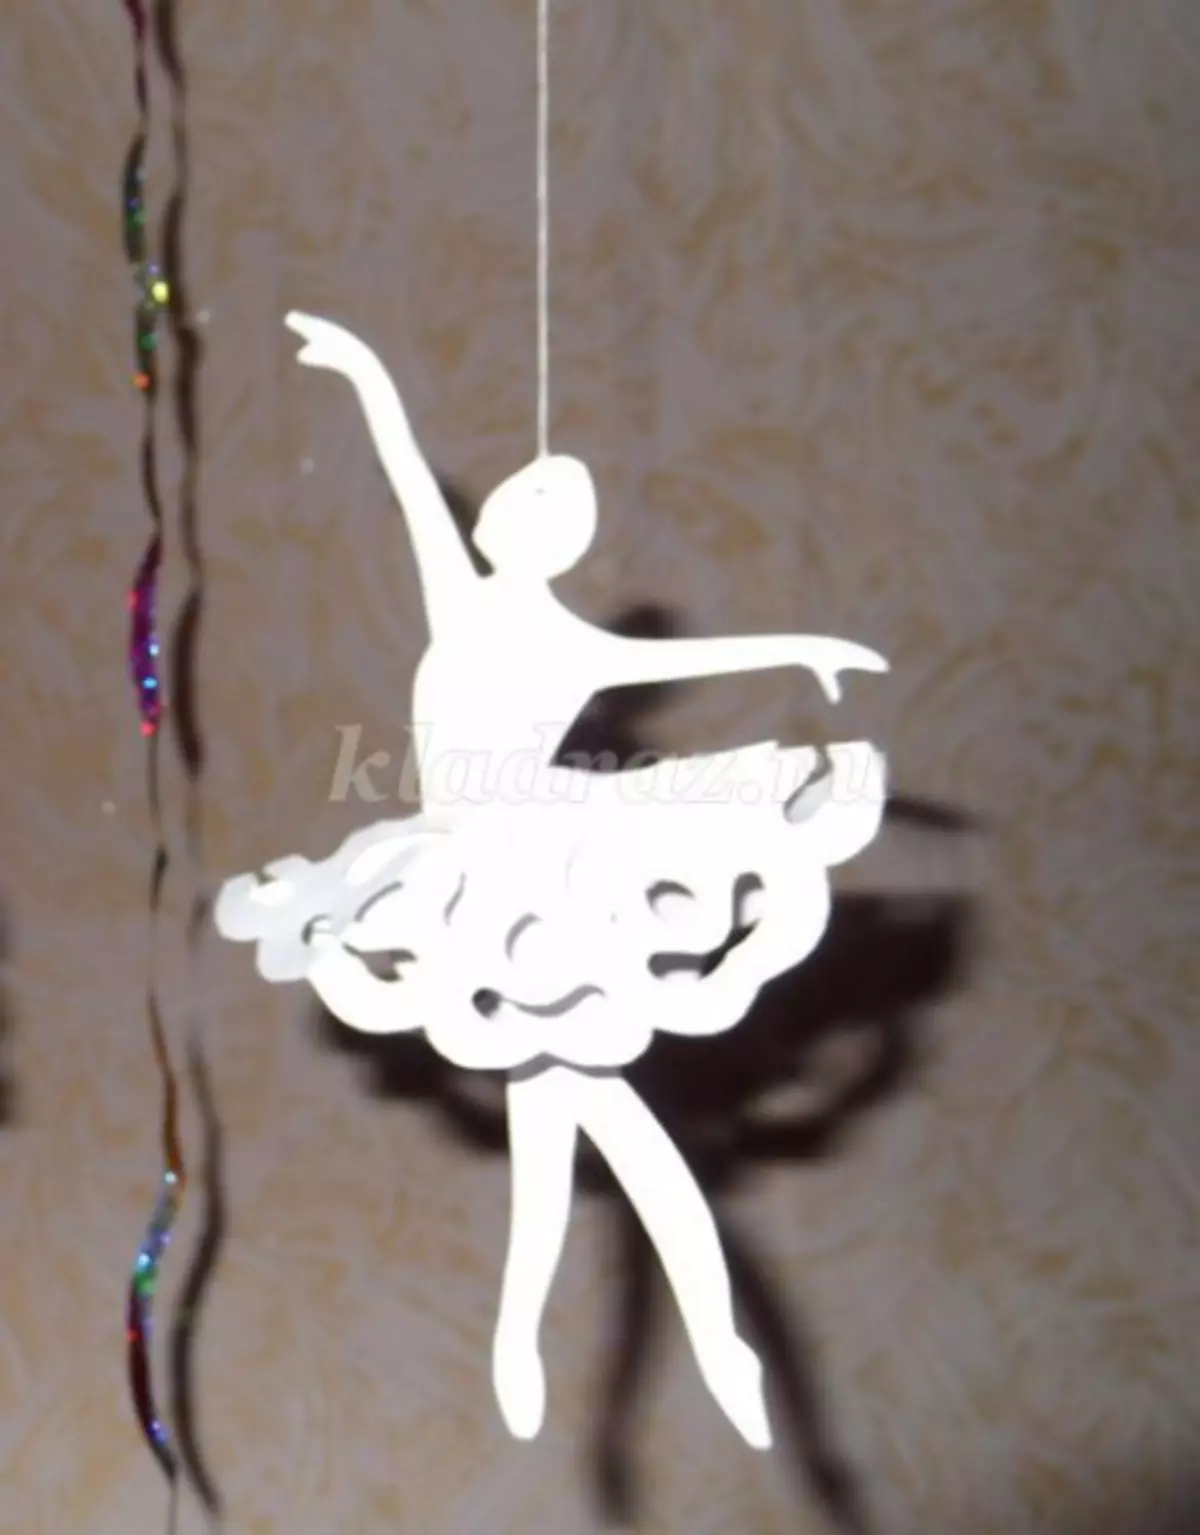 Snowflake-Ballerina yepepa: template ine diagram uye mufananidzo